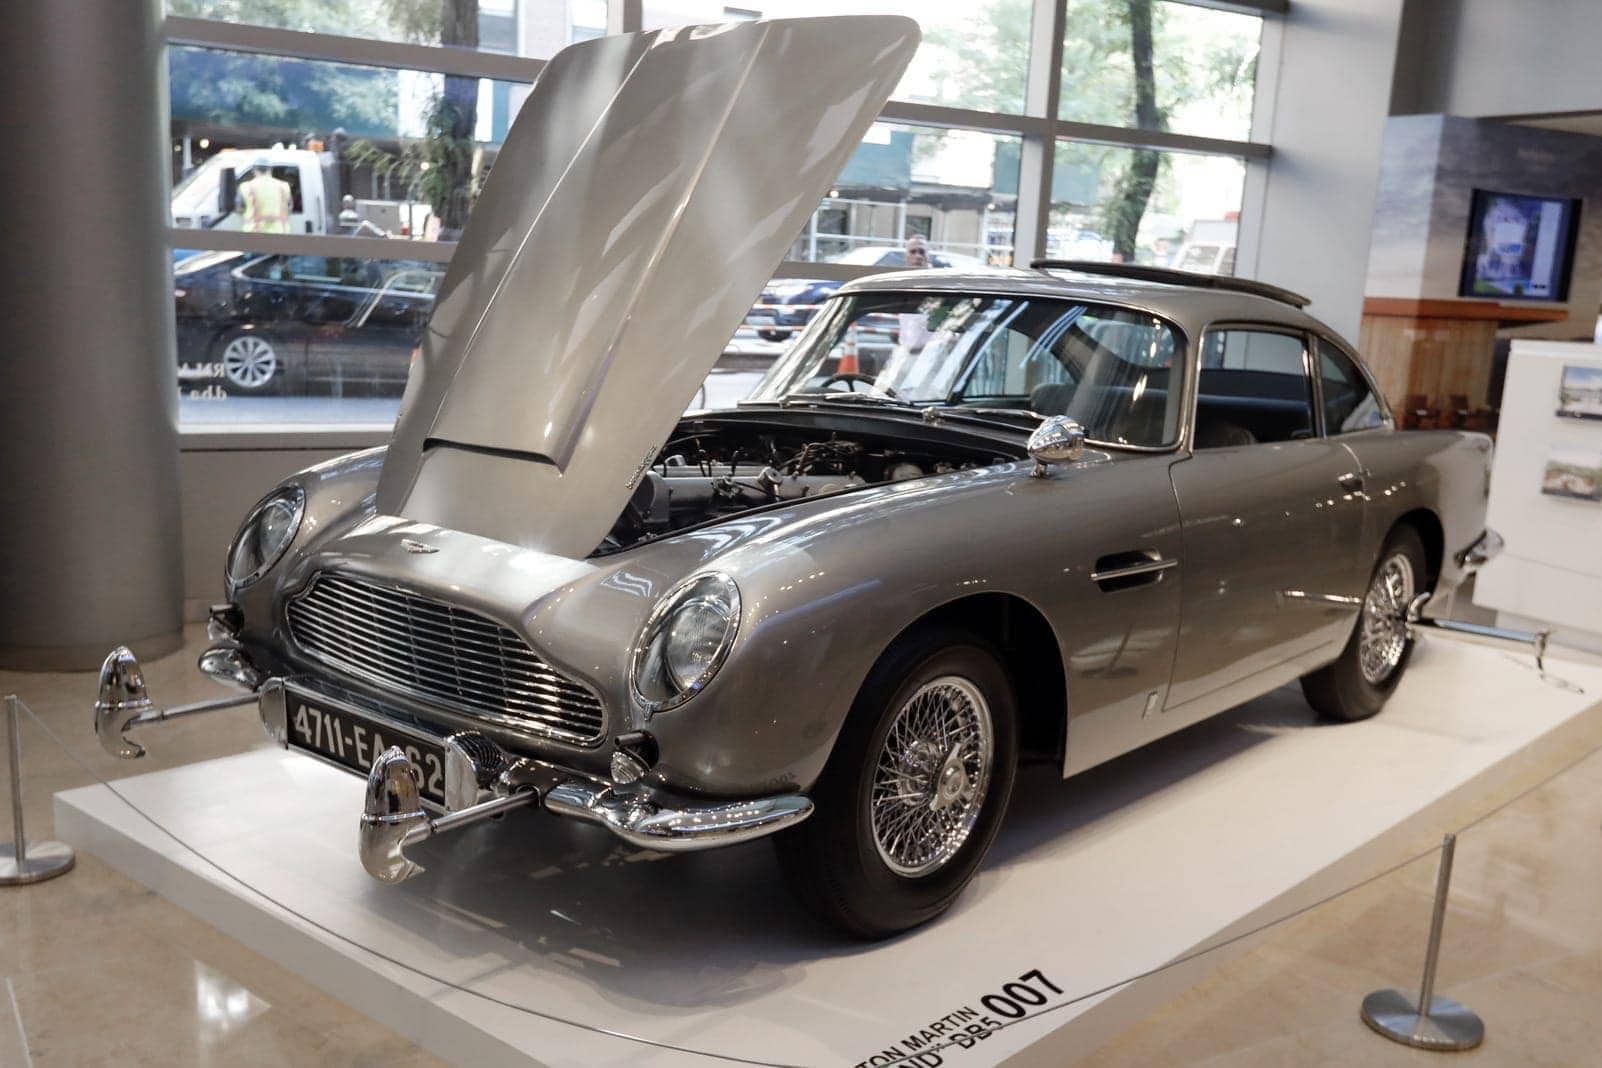 James Bond's Aston Martin wird versteigert